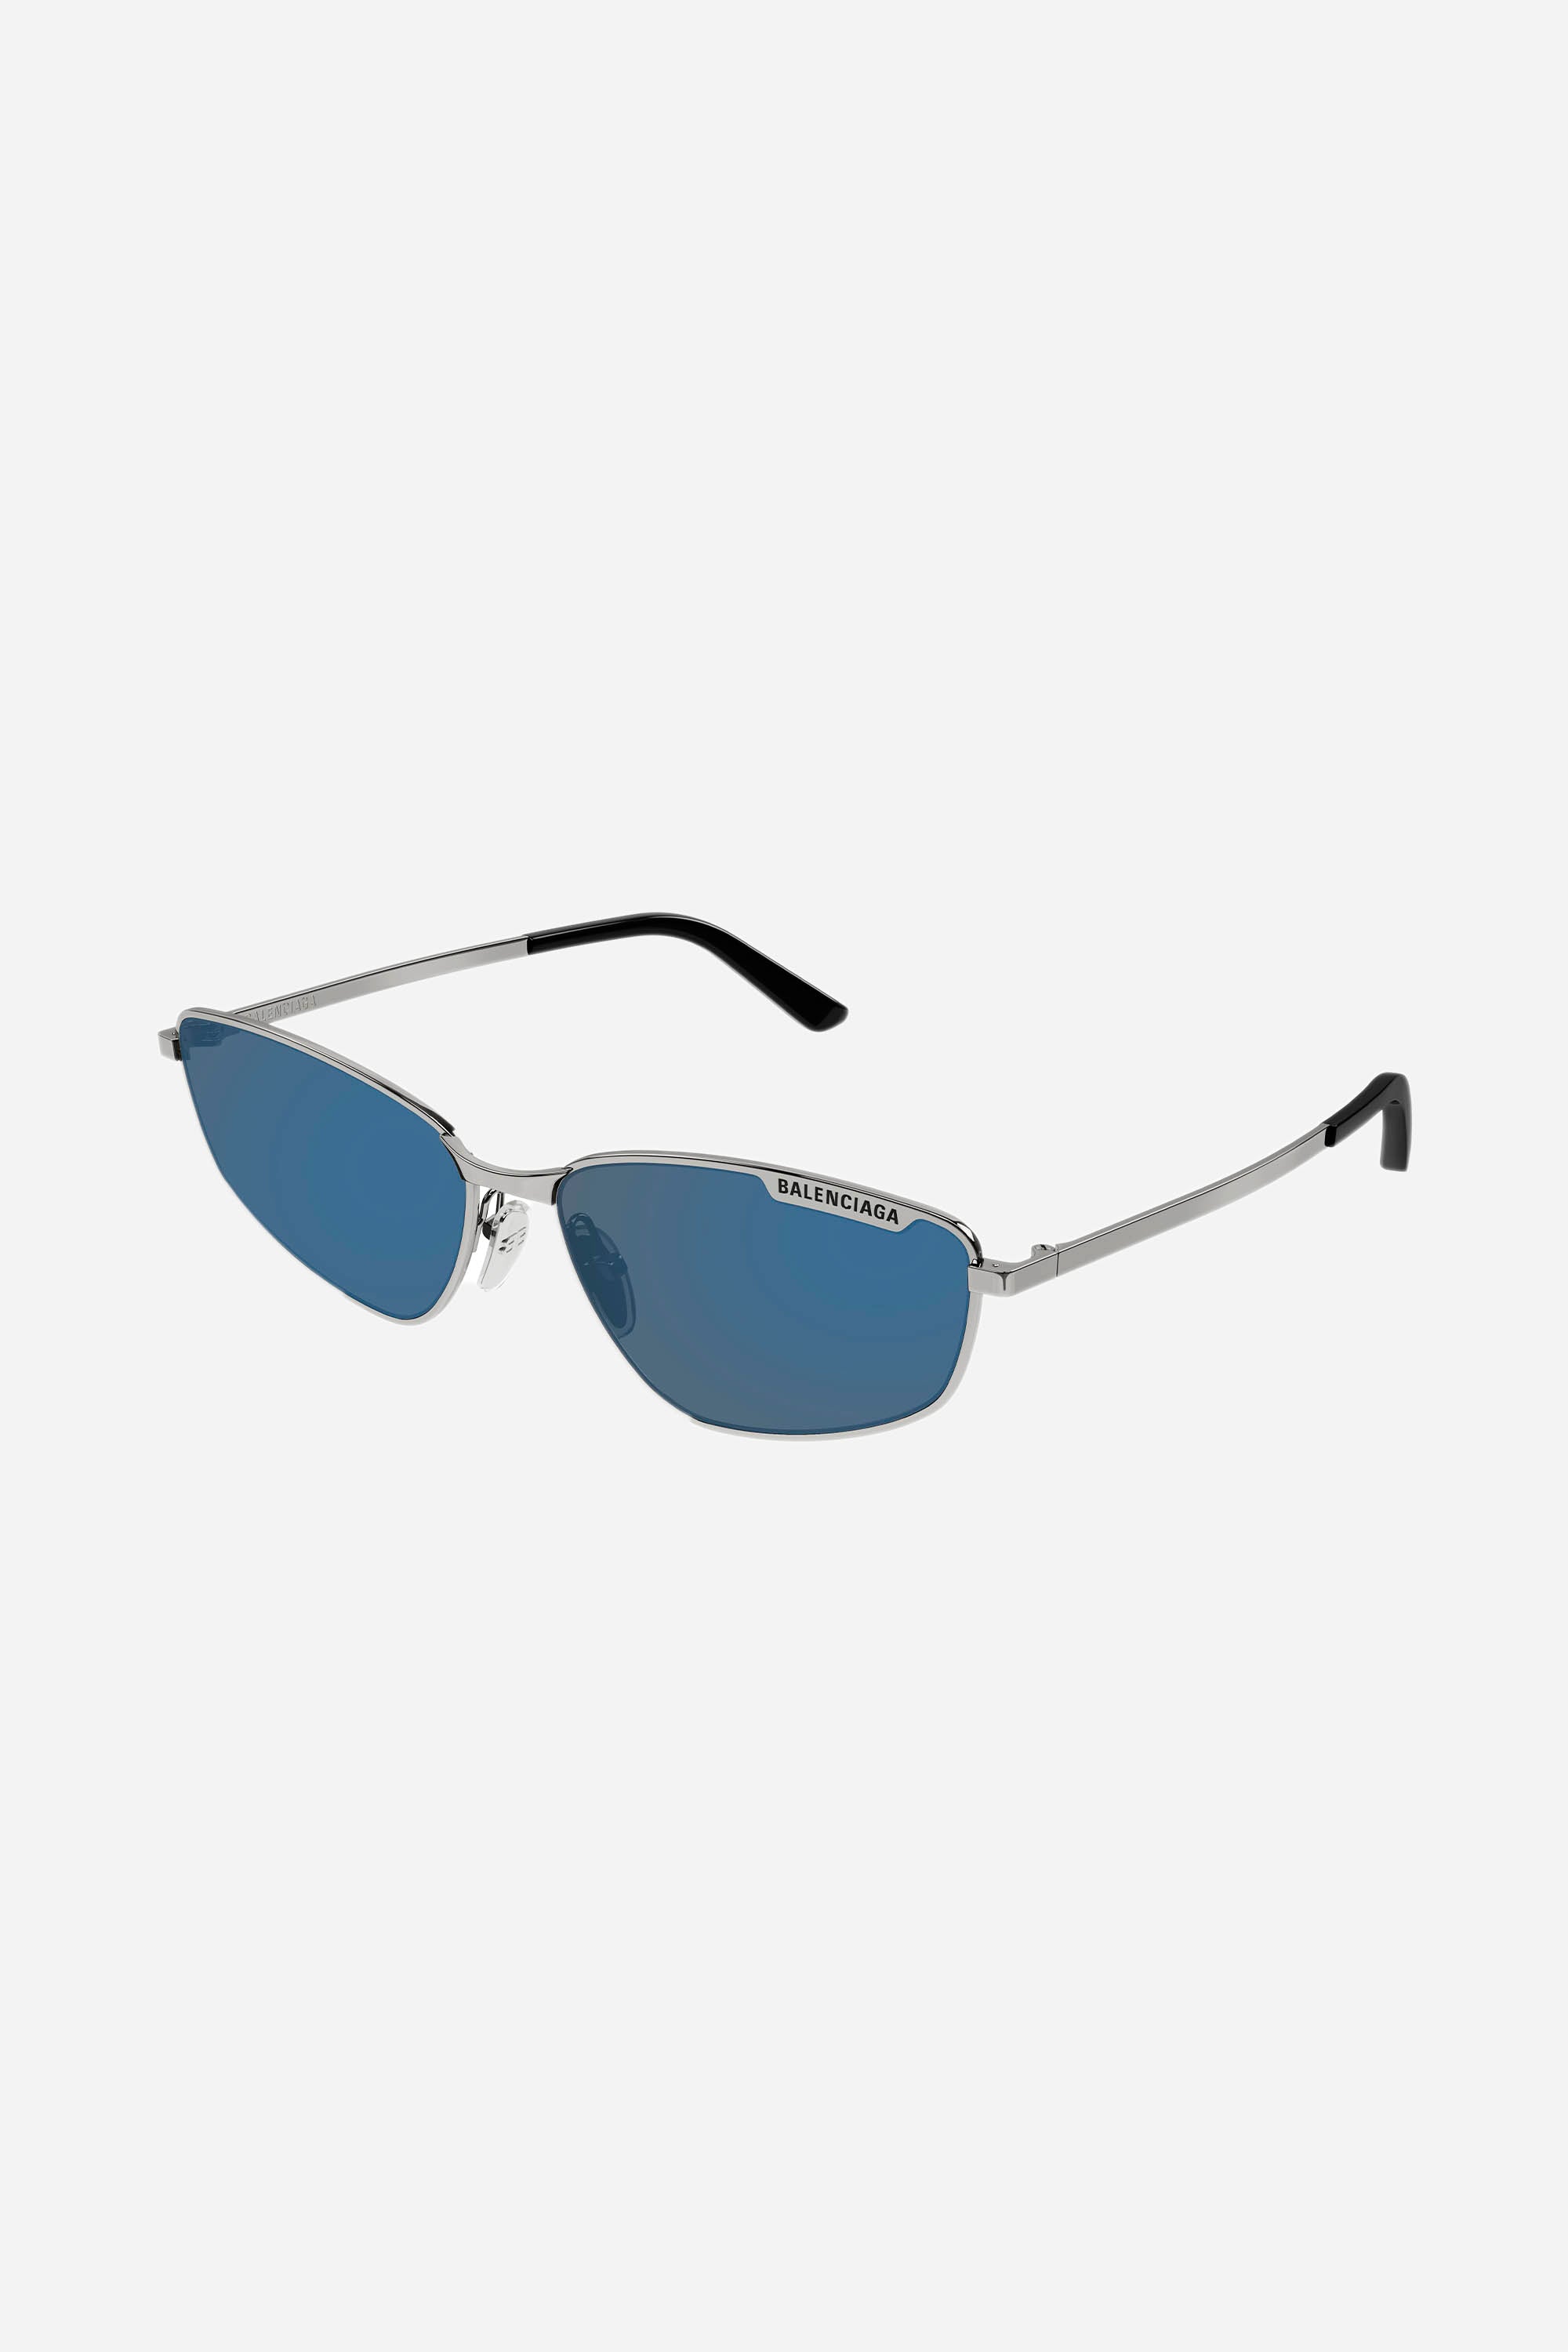 Balenciaga blue metal cat eye sunglasses - Eyewear Club